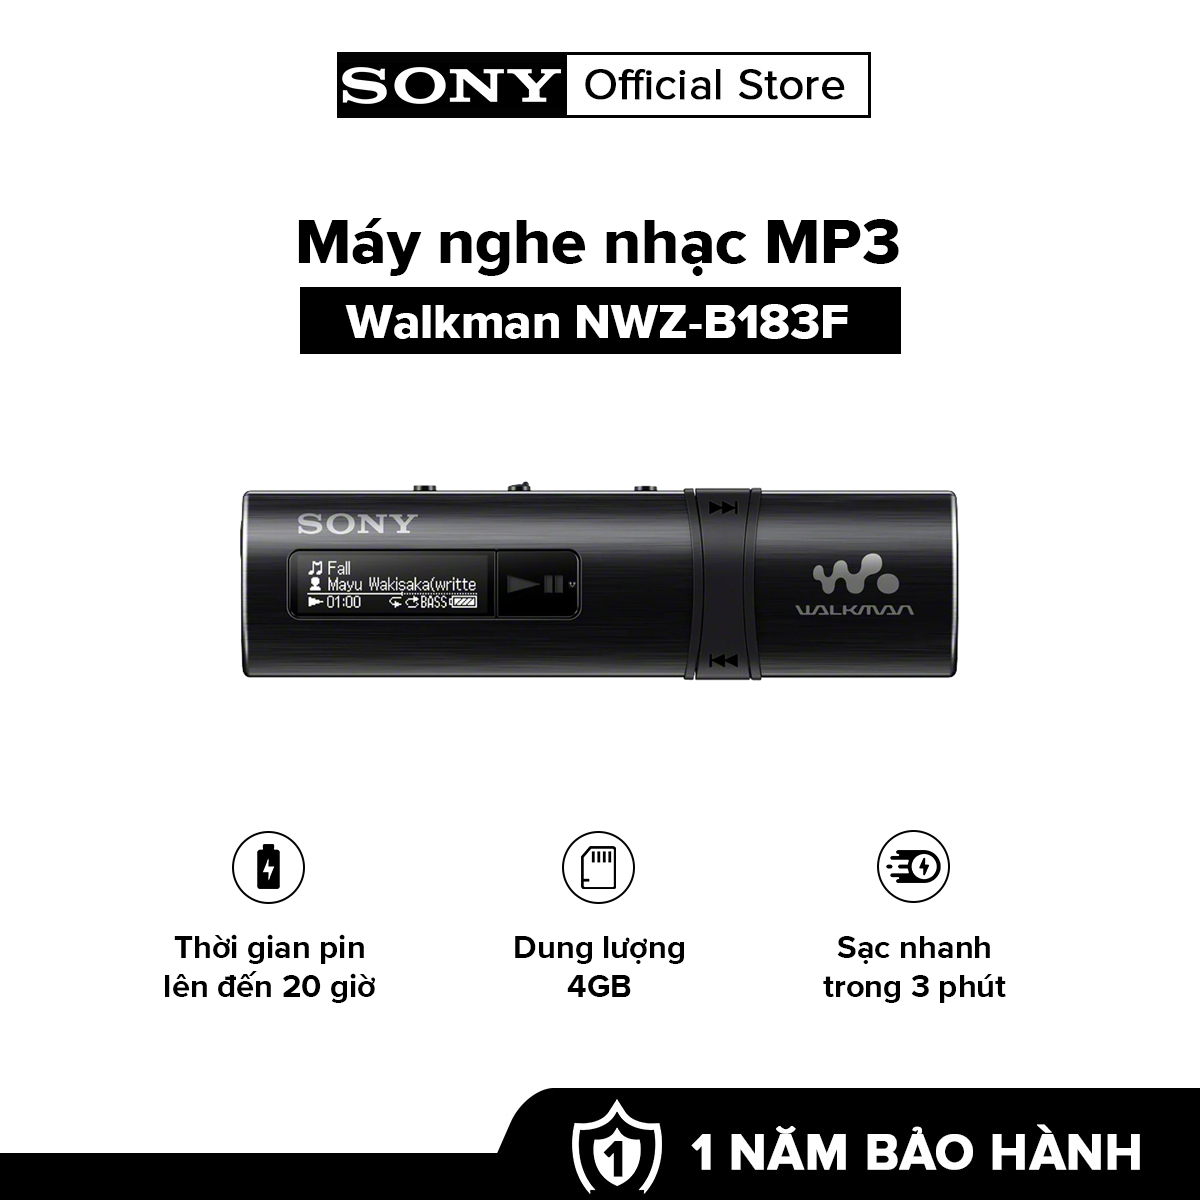 [HÀNG CHÍNH HÃNG] MÁY NGHE NHAC MP3 Walkman tích hợp USB NWZ-B183F Dung lượng 4GB cho khoảng 900 bài hát Thời gian sử dụng pin lên đến 20 giờ Sạc nhanh trong 3 phút